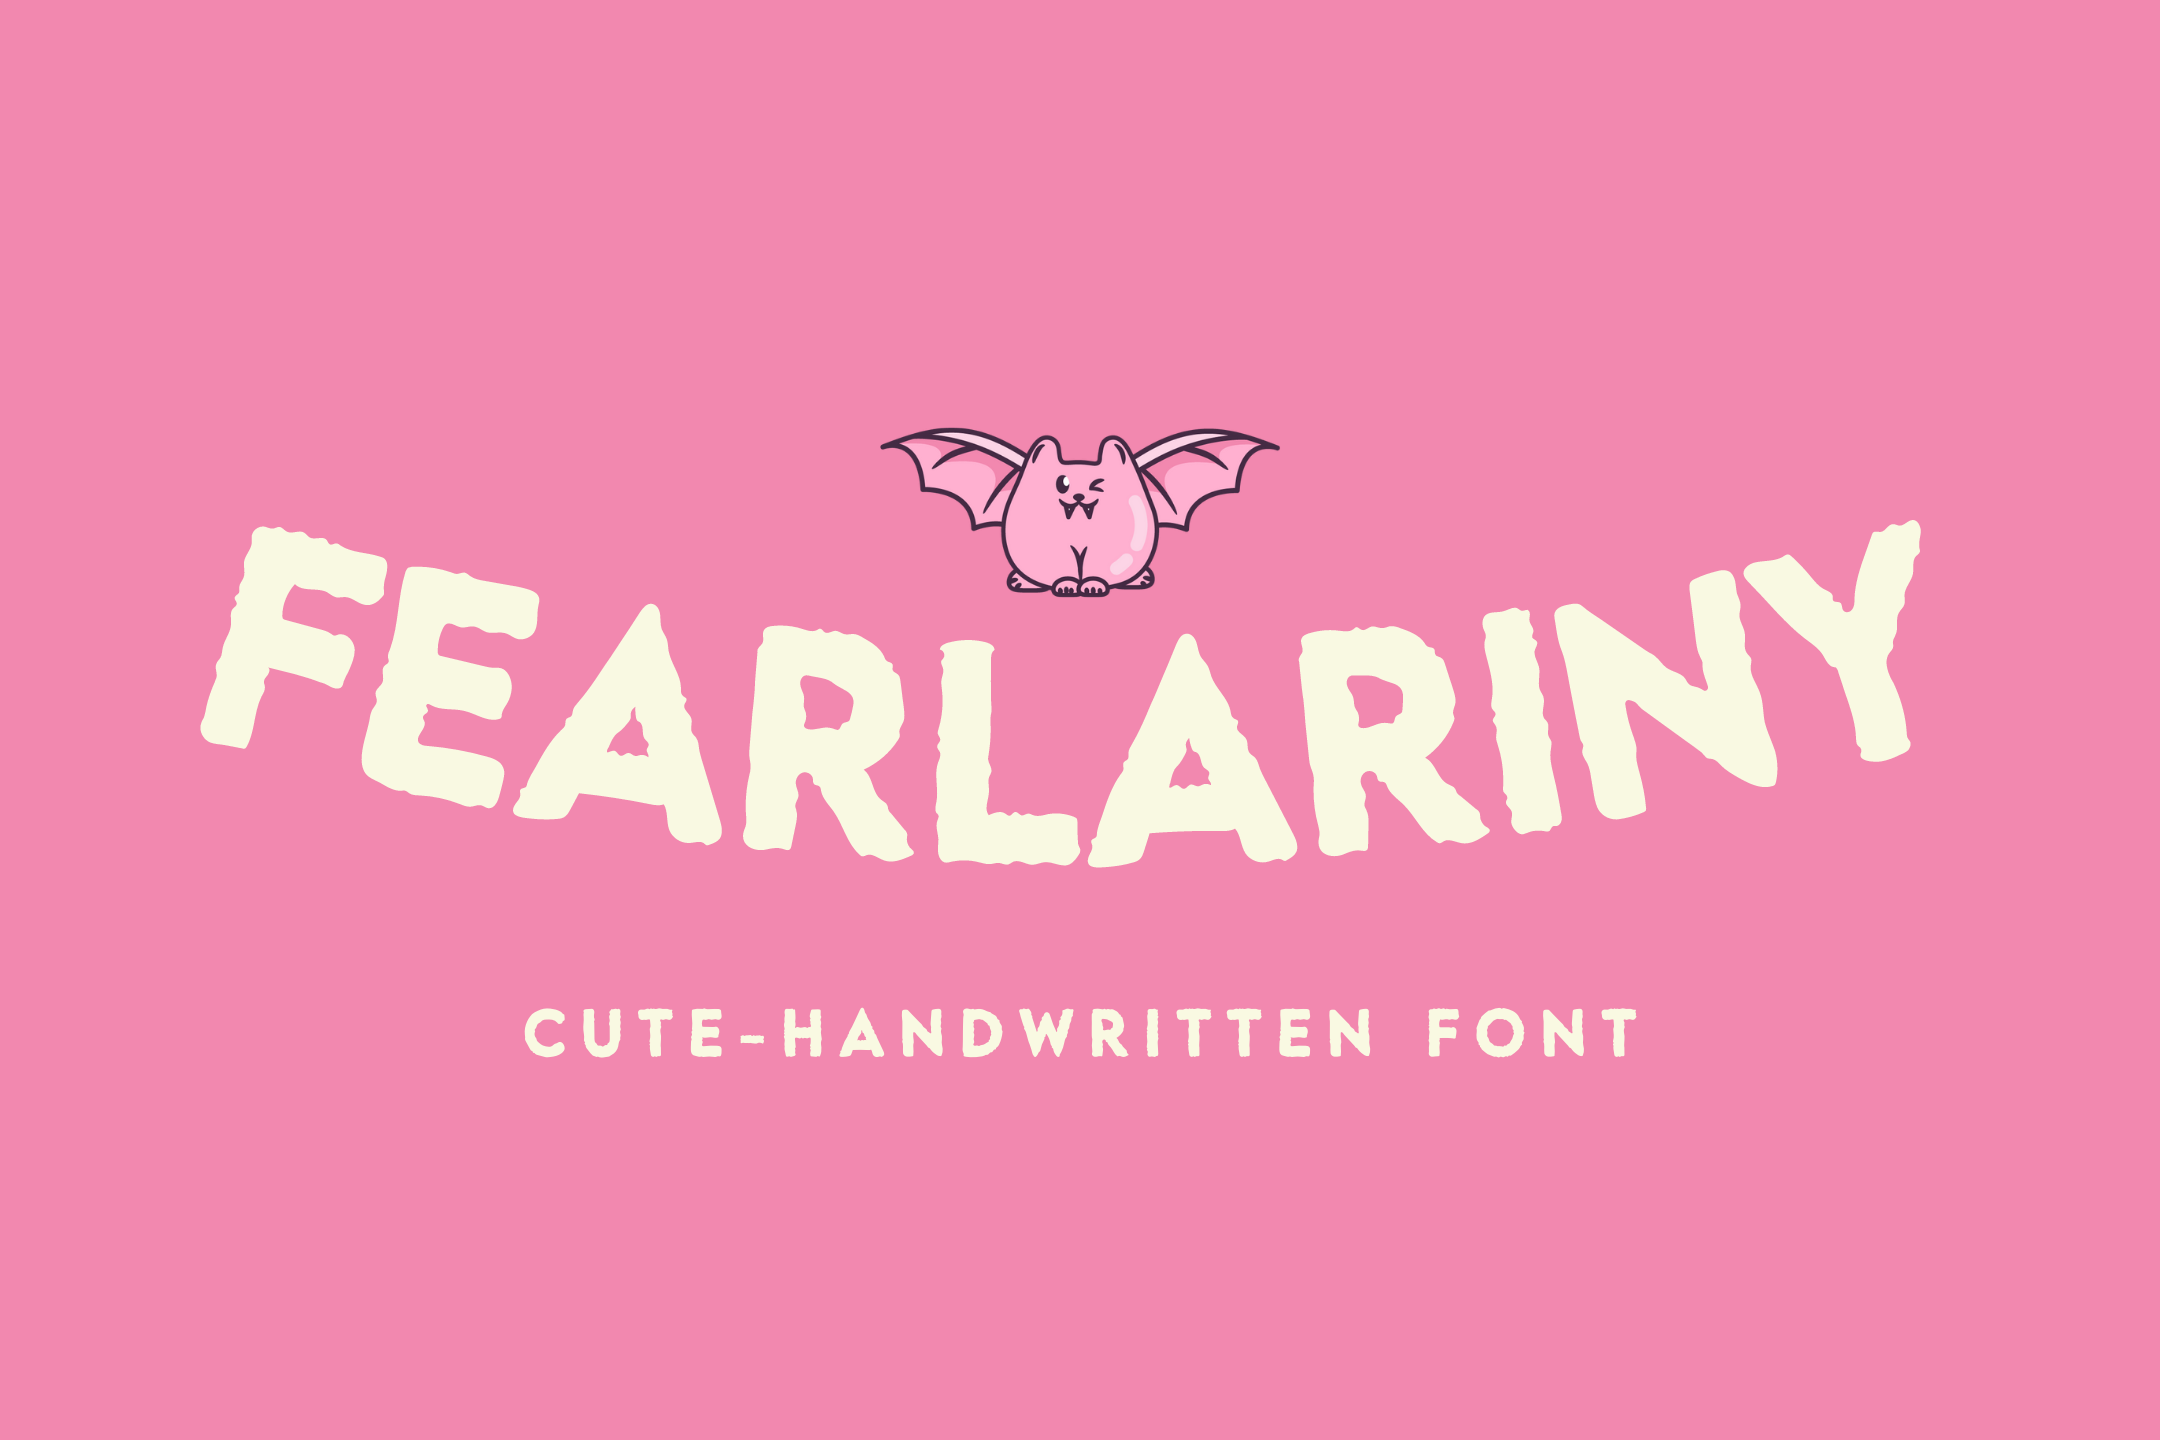 Fearlariny Font